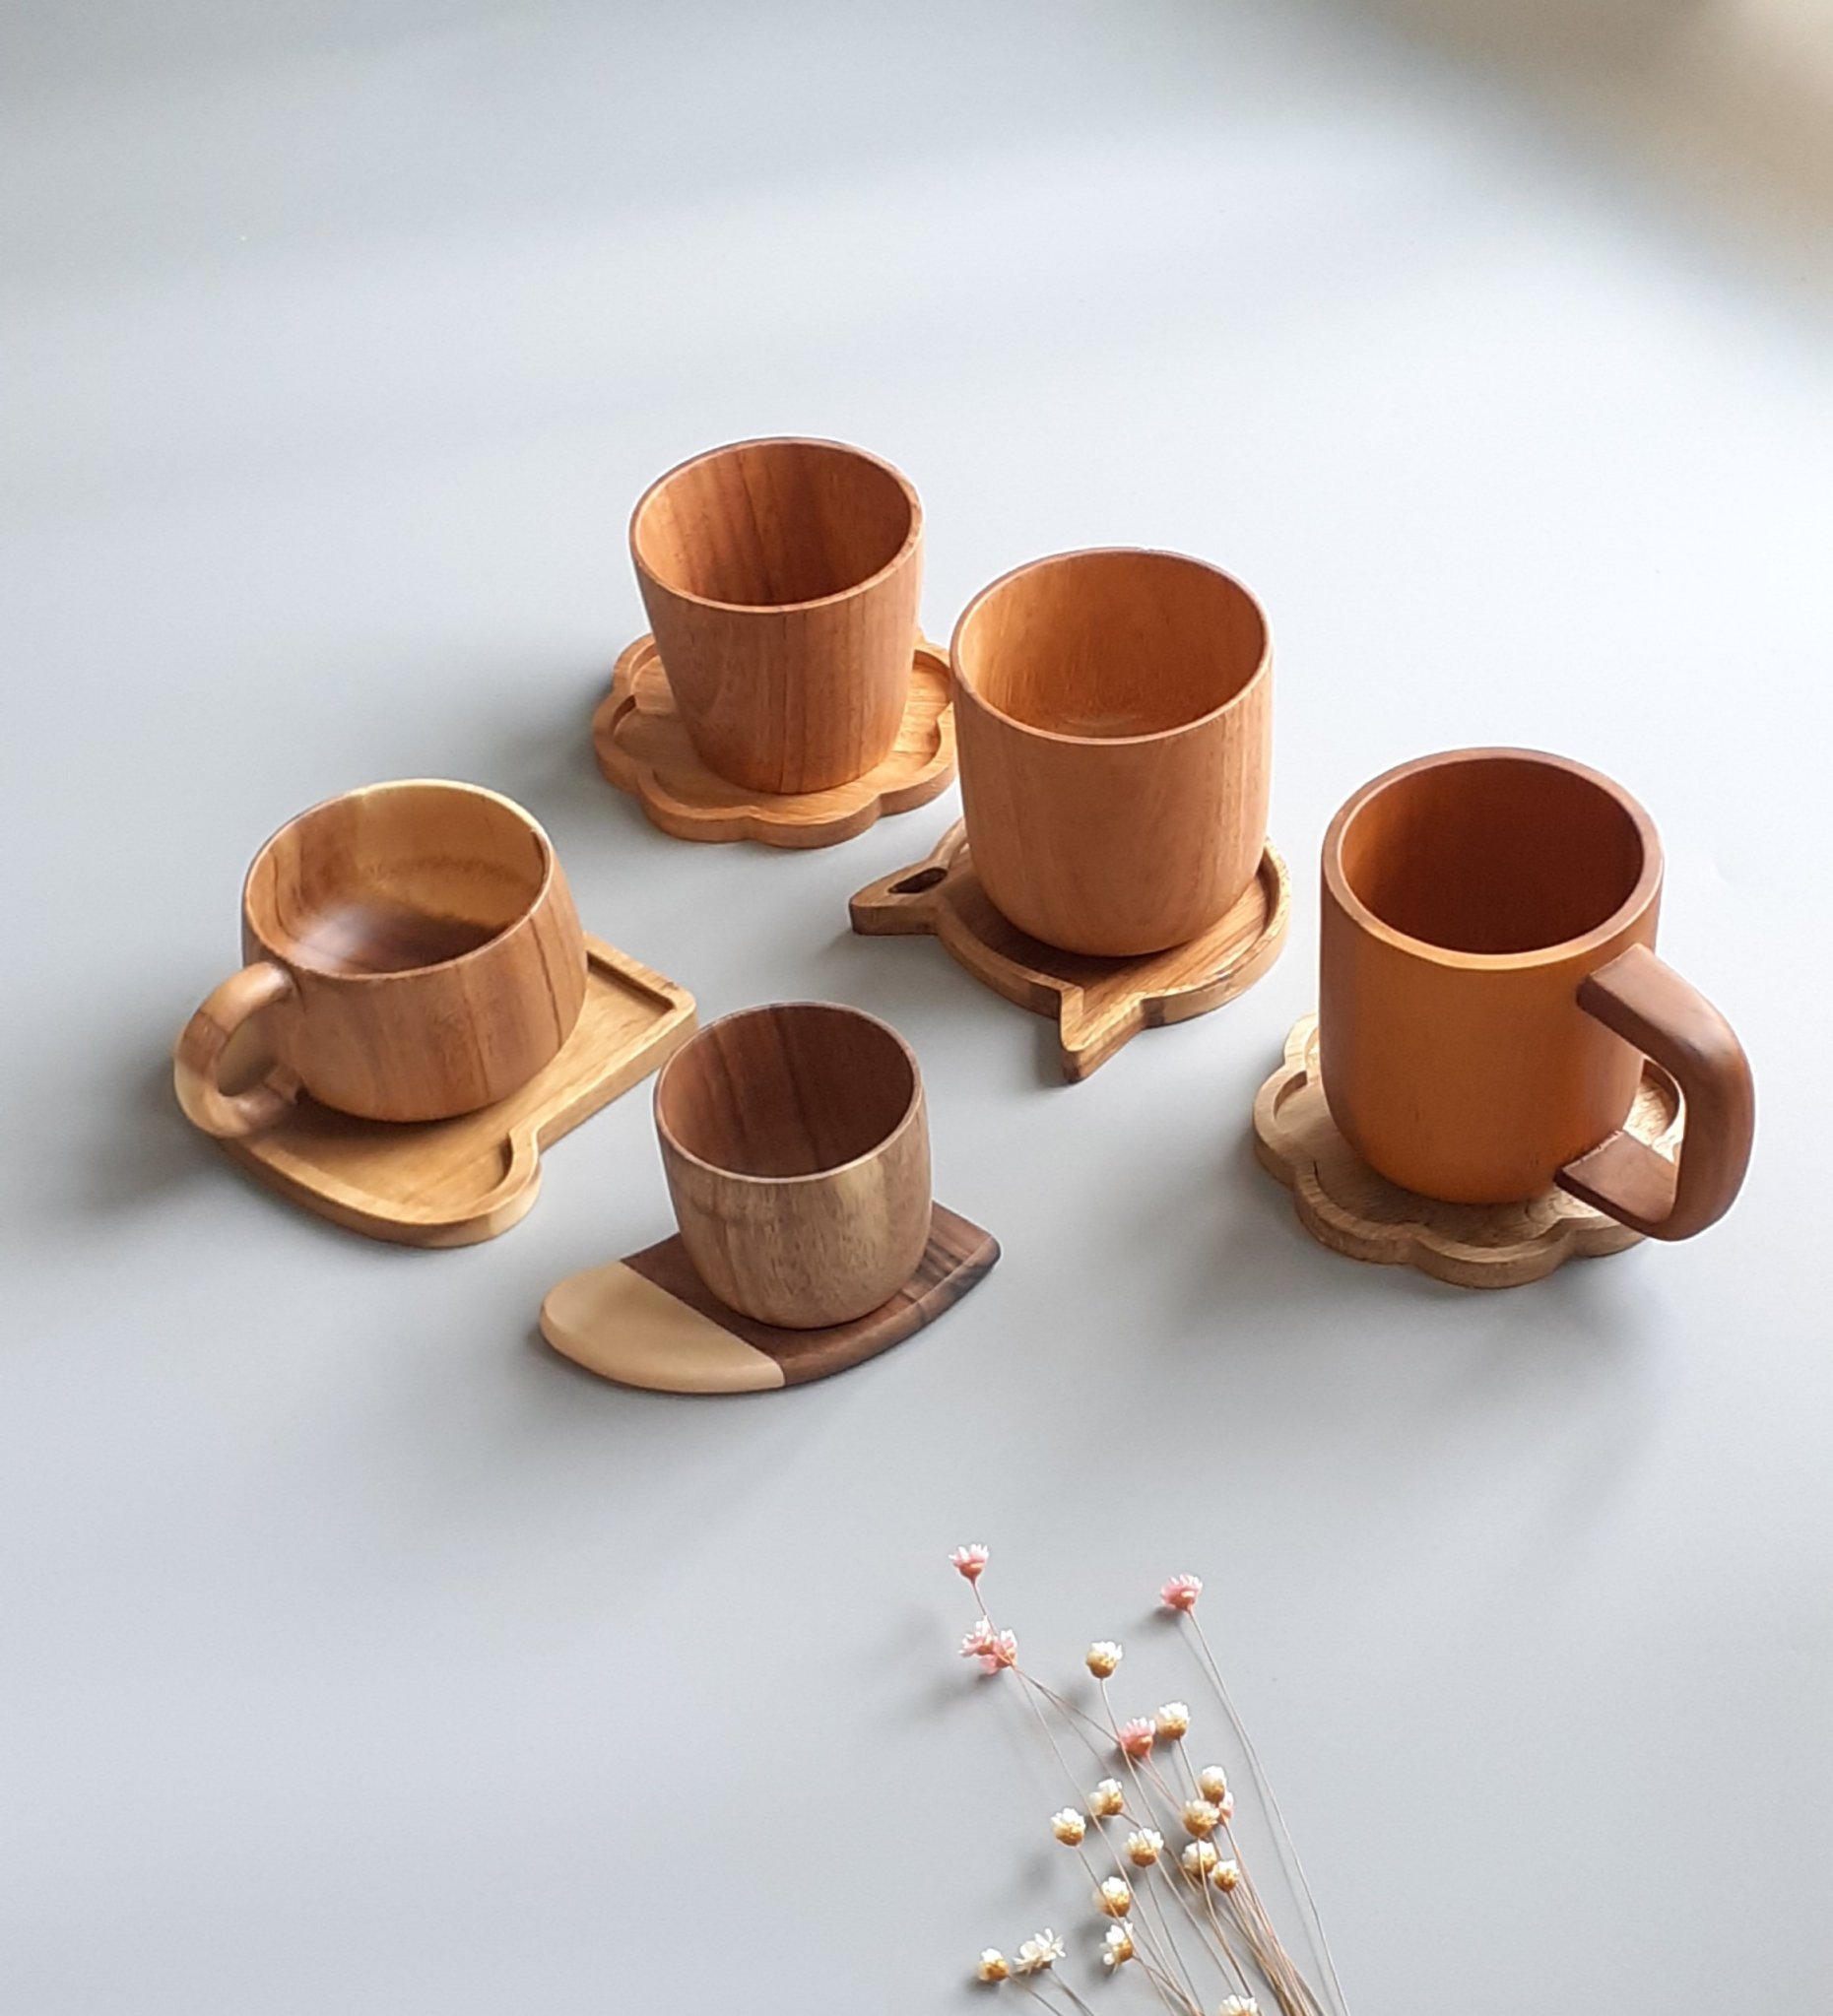 Bộ ly cốc uống trà, cà phê bằng gỗ tự nhiên đẹp màu nâu